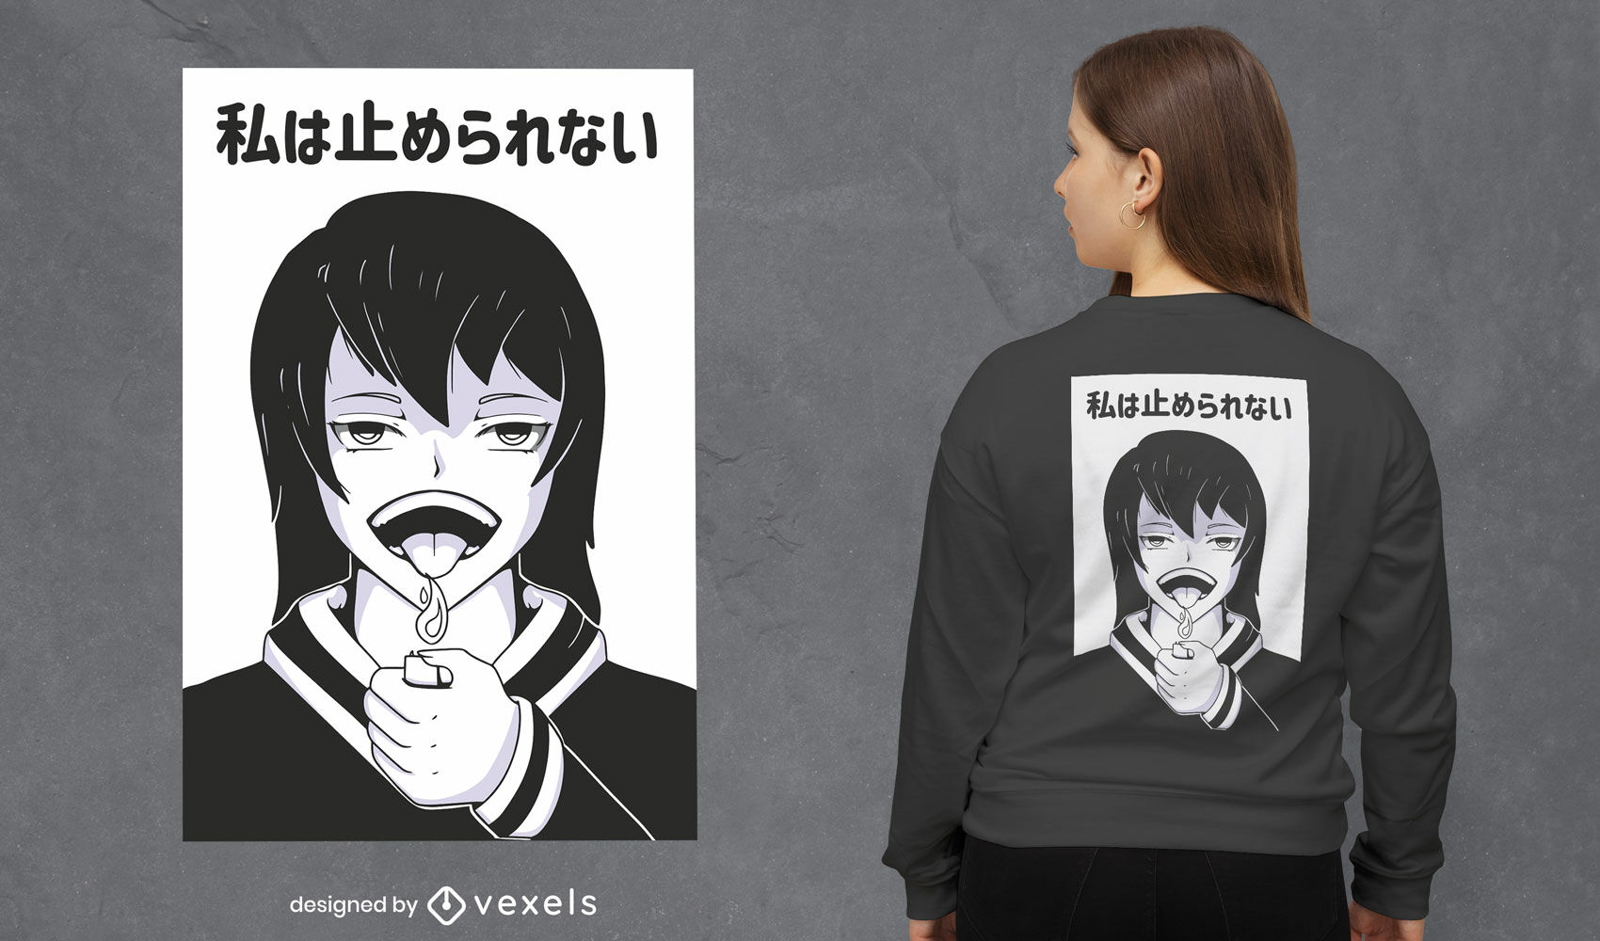 Fantastisches Anime-M?dchen-T-Shirt-Design